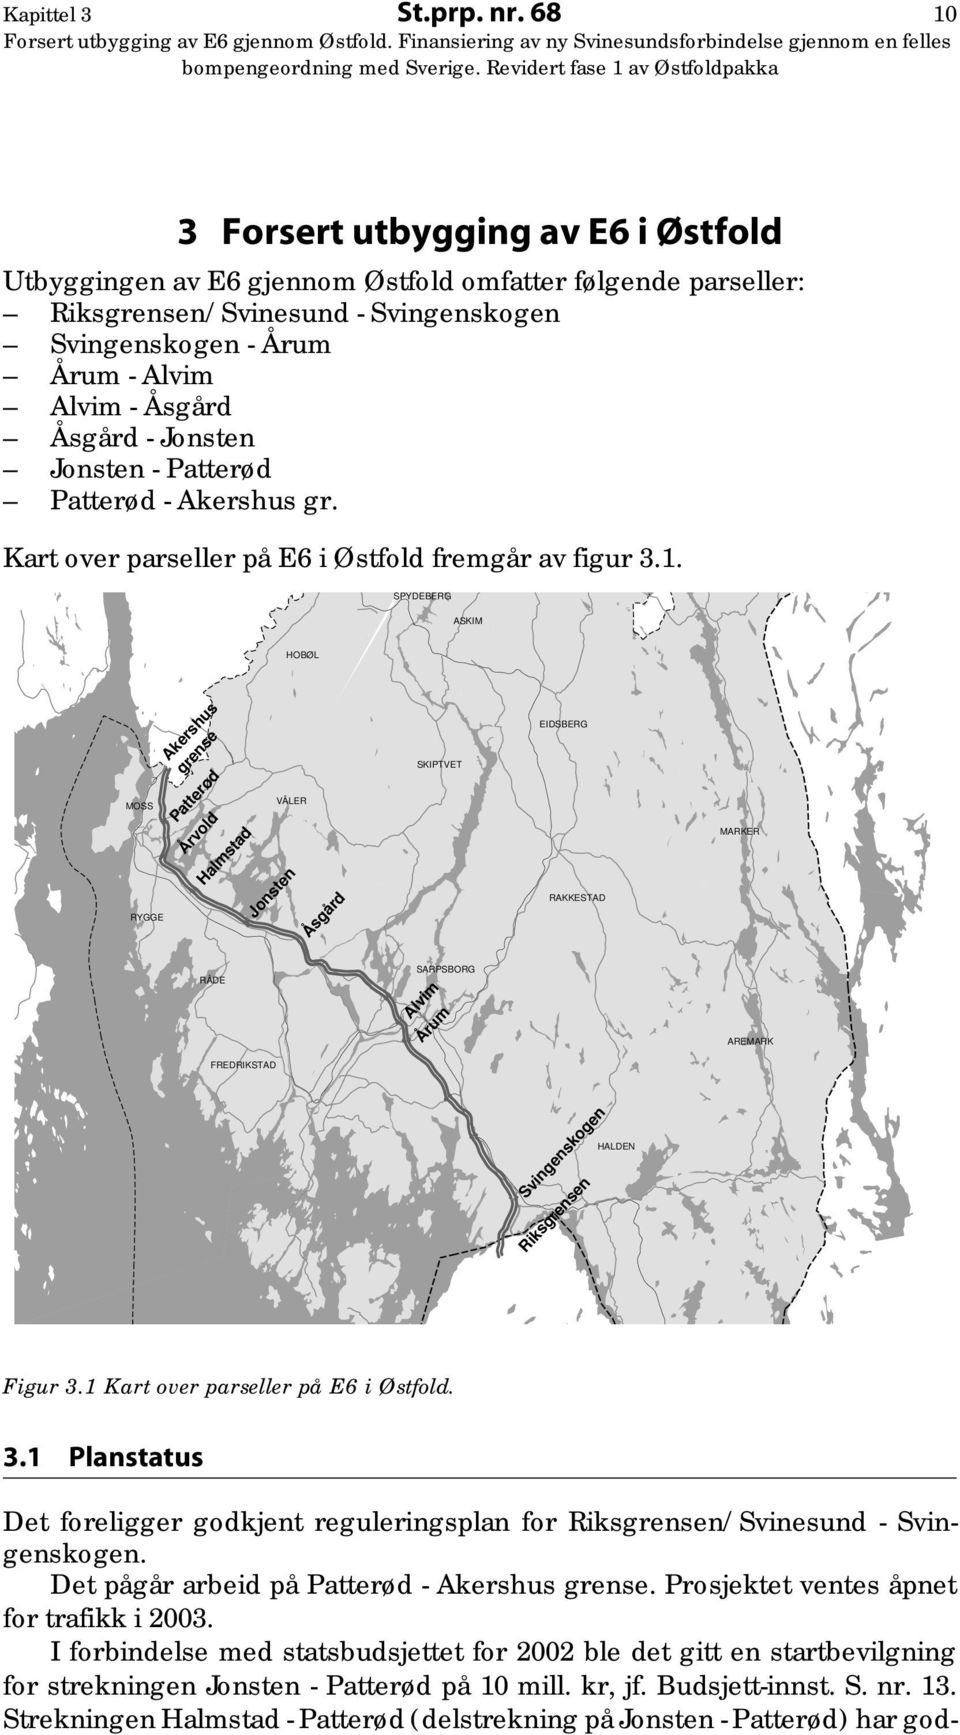 - Jonsten Jonsten - Patterød Patterød - Akershus gr. Kart over parseller på E6 i Østfold fremgår av figur 3.1.